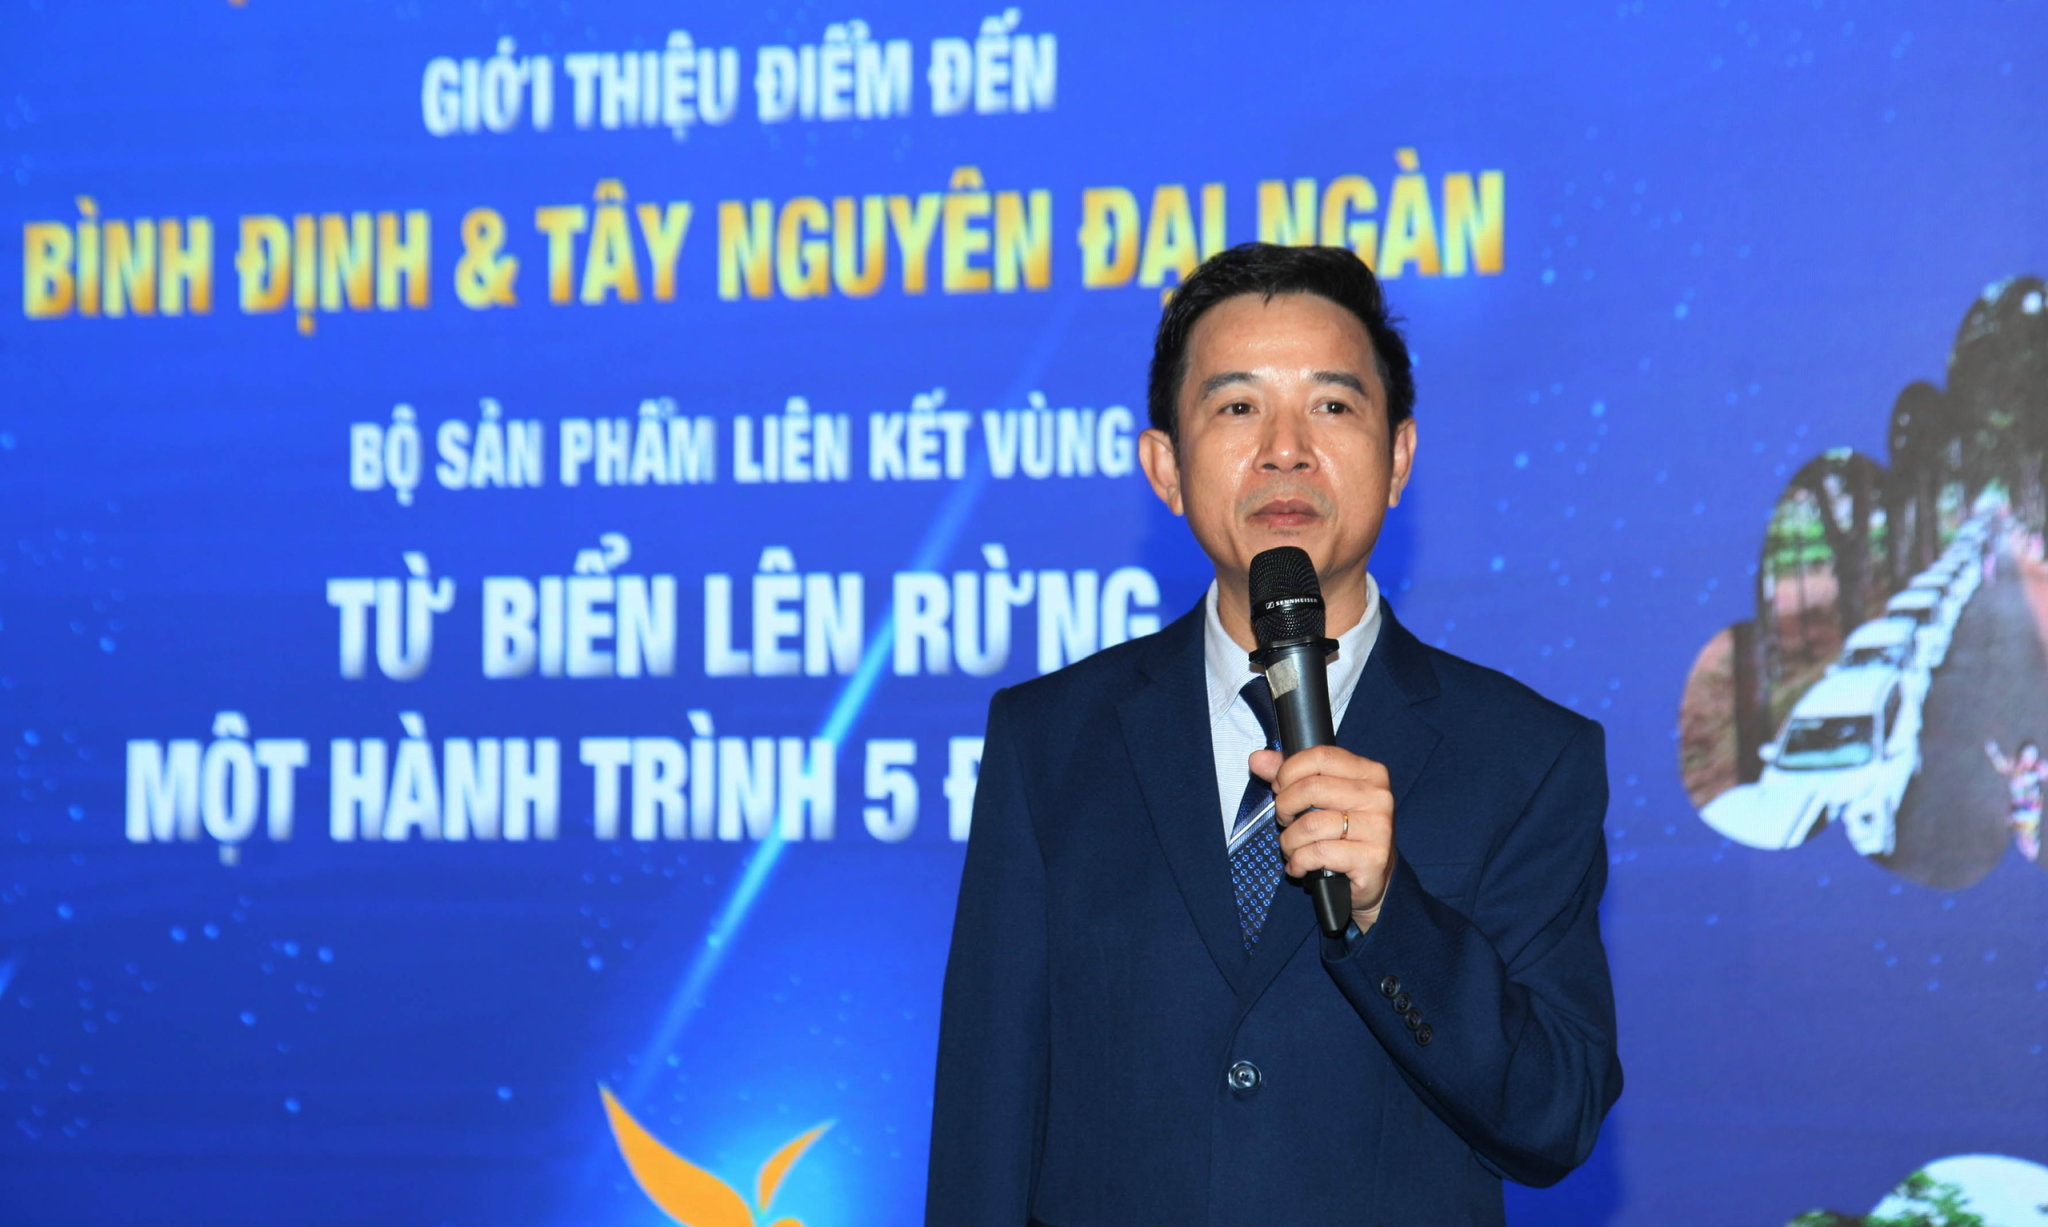 Ông Trần Văn Quang - Chủ tịch Công ty TNHH Dịch vụ & Du lịch VND Travel giới thiệu về bộ sản phẩm tour liên kết vùng, tour Caravan với chủ đề “Từ biển lên rừng - Một hành trình 5 điểm đến”